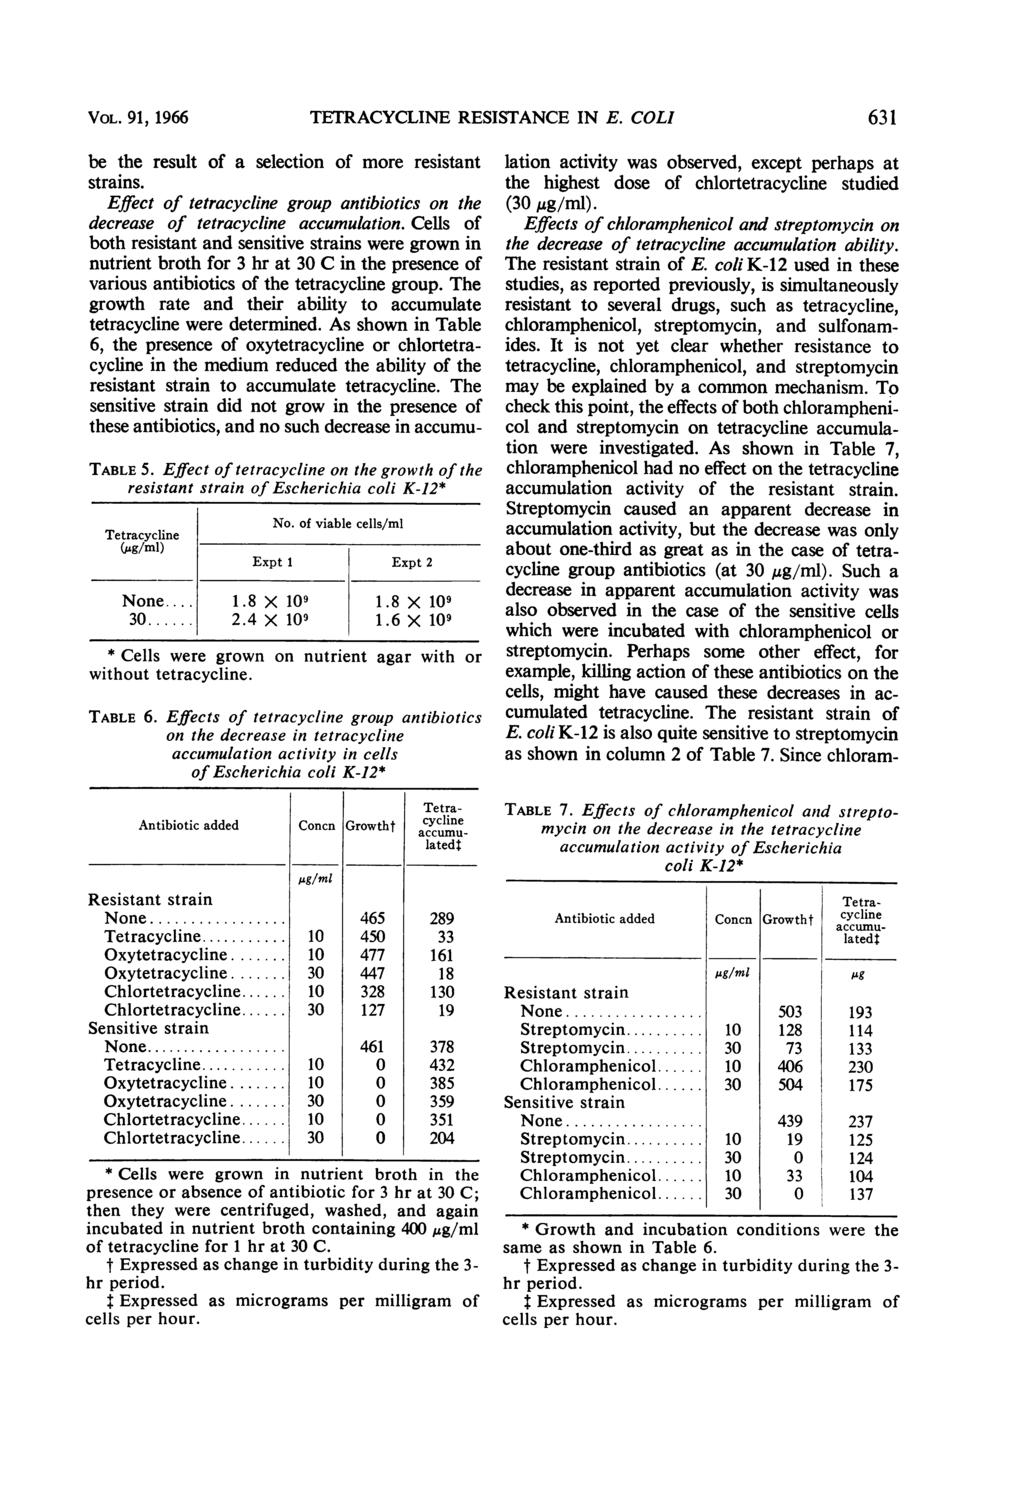 VOL. 91, 1966 TETRACYCLINE RESISTANCE IN E. COLI 631 TABLE 5. Effect of tetracycline on the growth of the resistant strain of Escherichia coli K-12* (jg/ml) No.